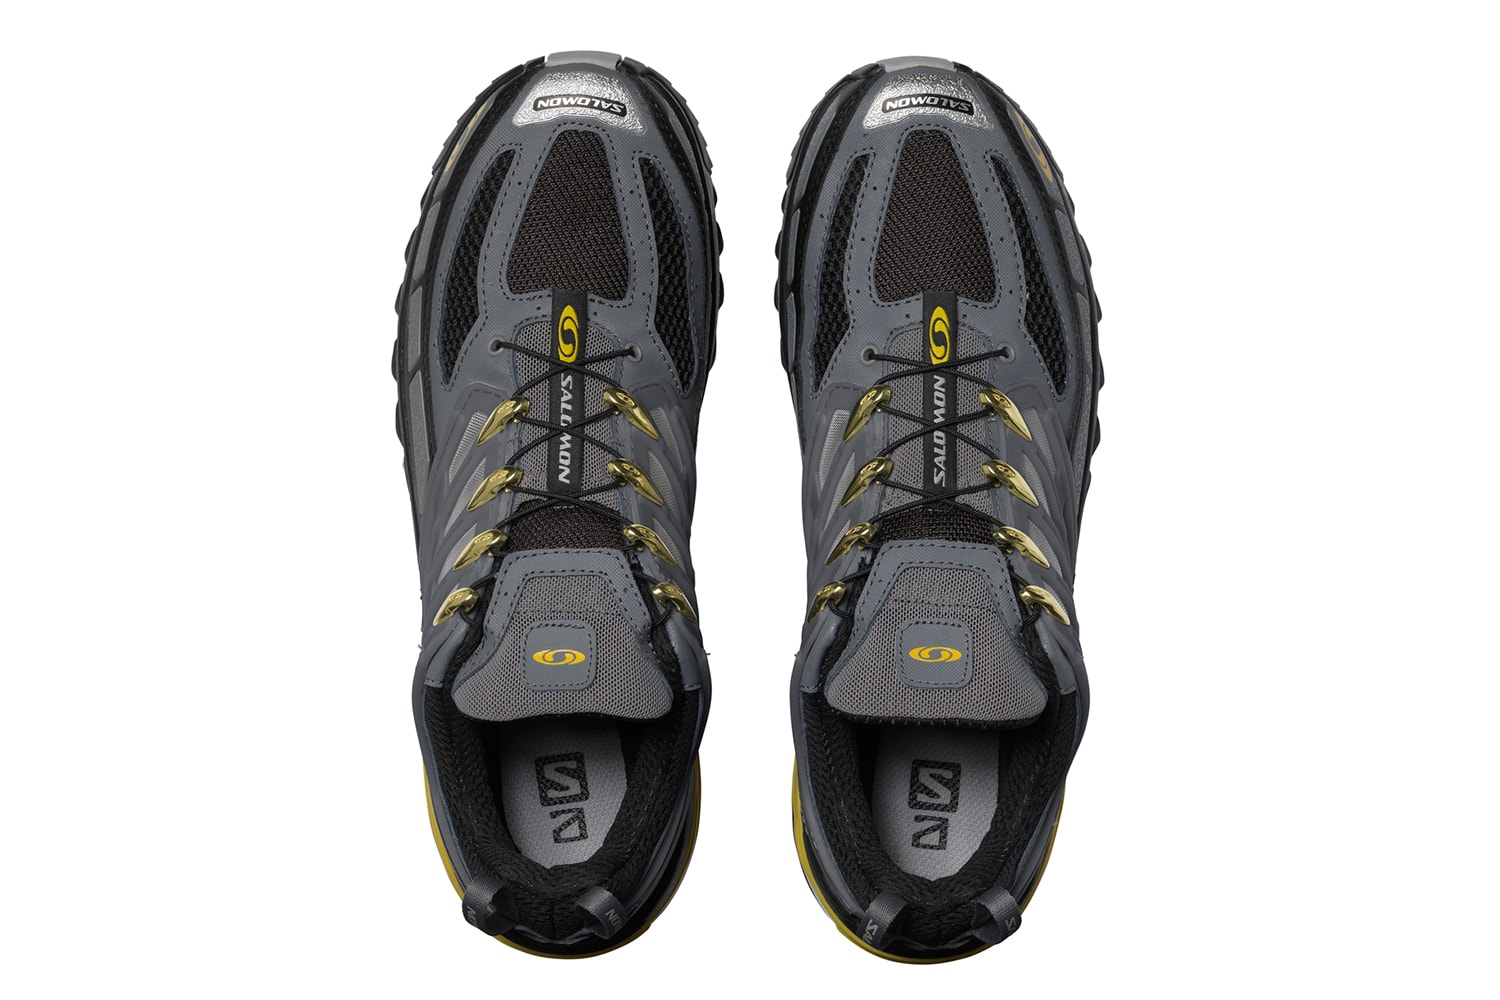 Salomon 全新 ACS PRO ADVANCED 鞋款正式登场